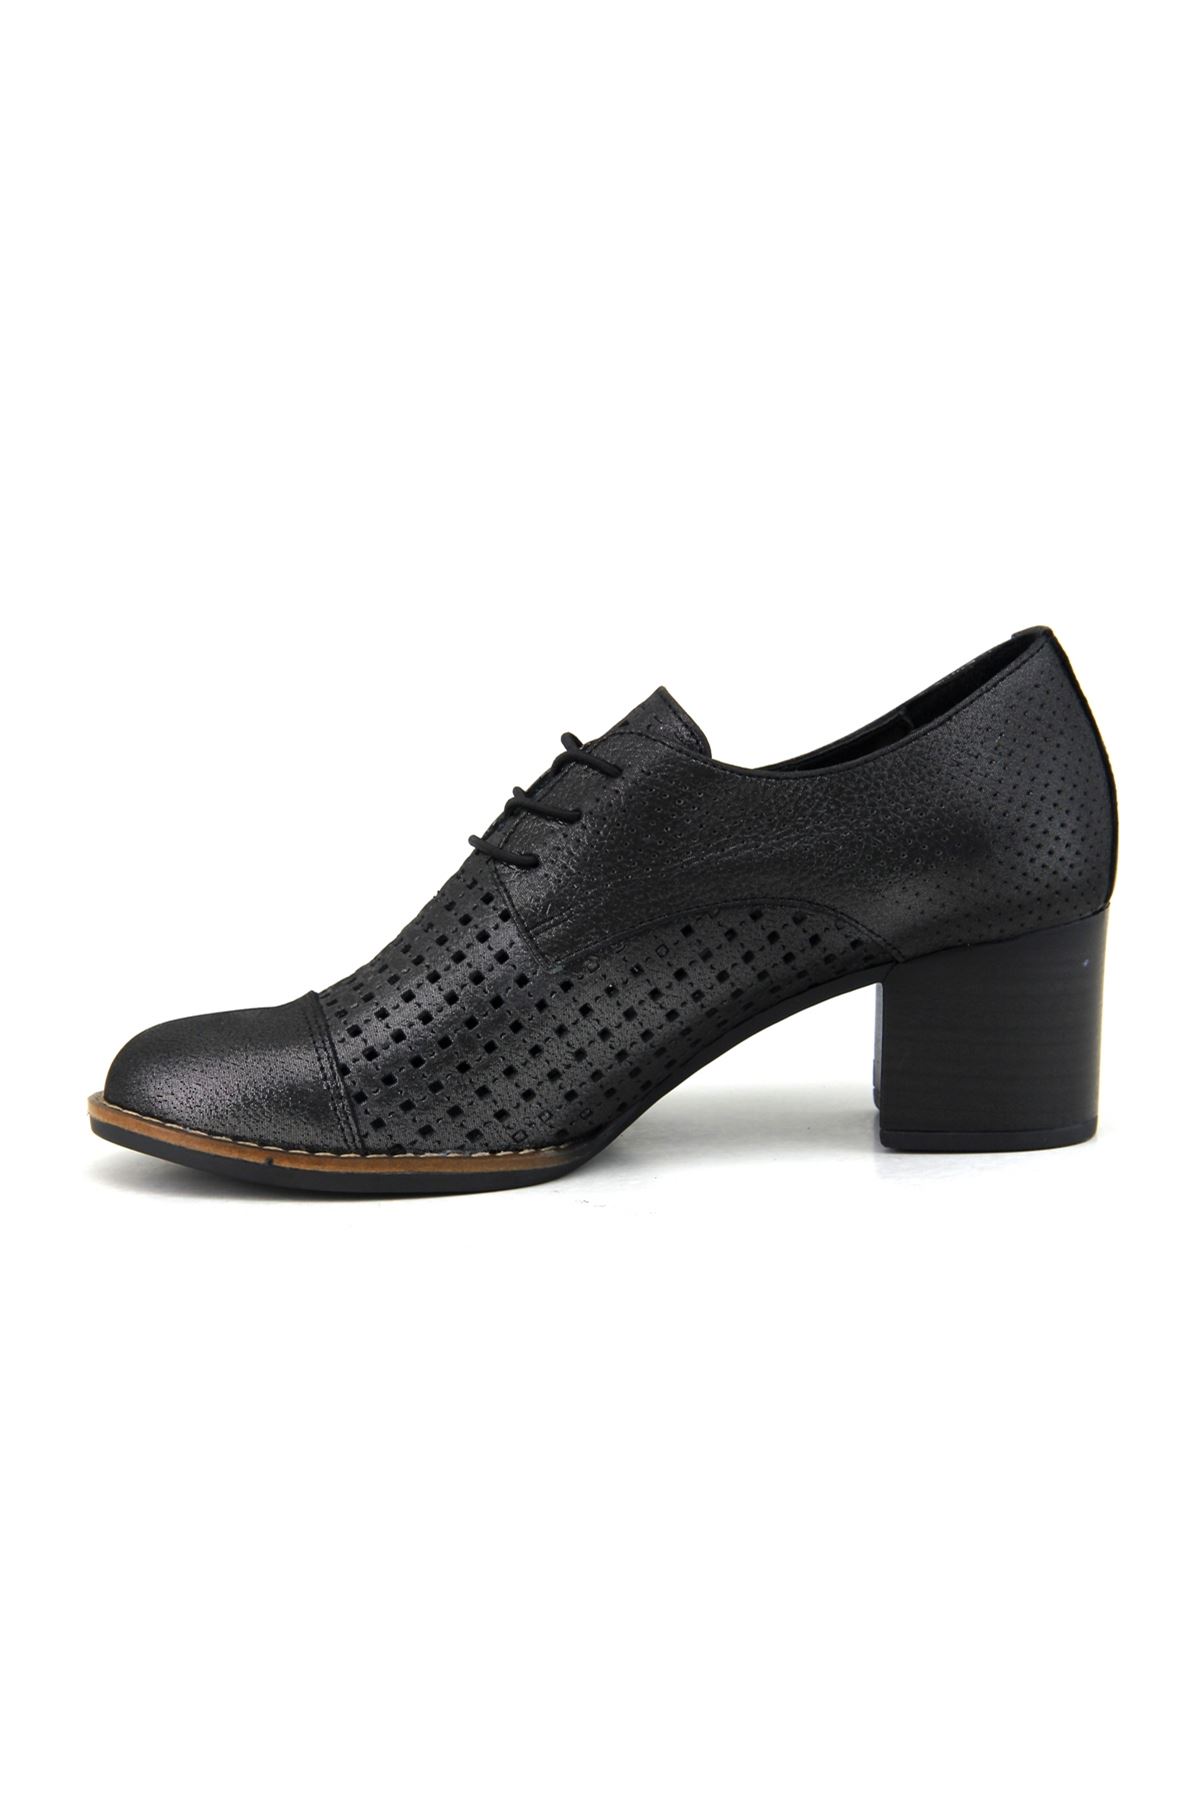 Mammamia D23YA-350 Hakiki Deri Kadın Ayakkabı - Siyah Çelik